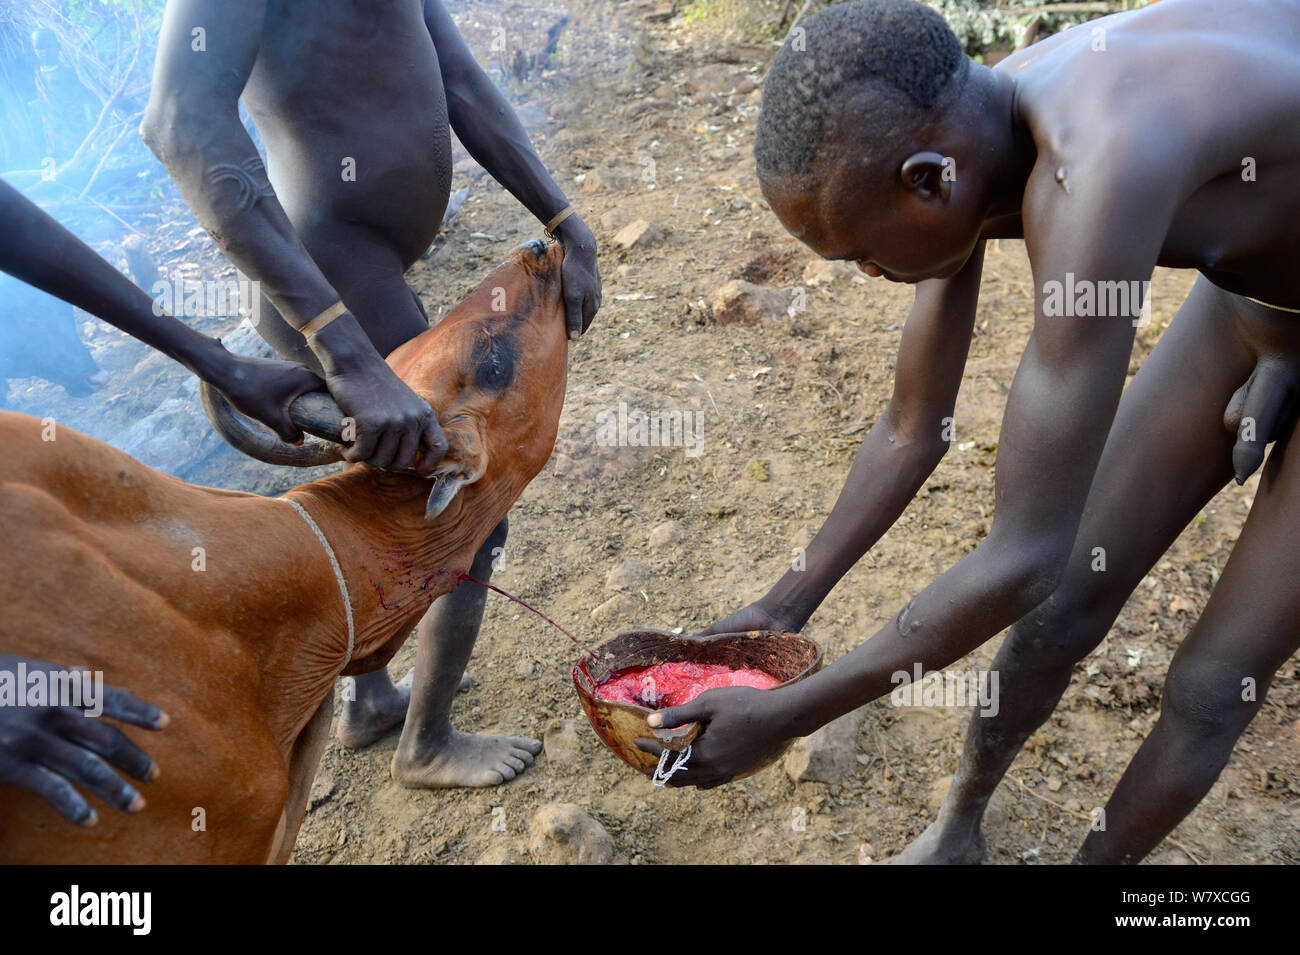 Vieh herder Der Suri/Surma Stamm Blut aus der Vena jugularis interna einer Kuh zu trinken. Omo-tal, Äthiopien, September 2014. Stockfoto